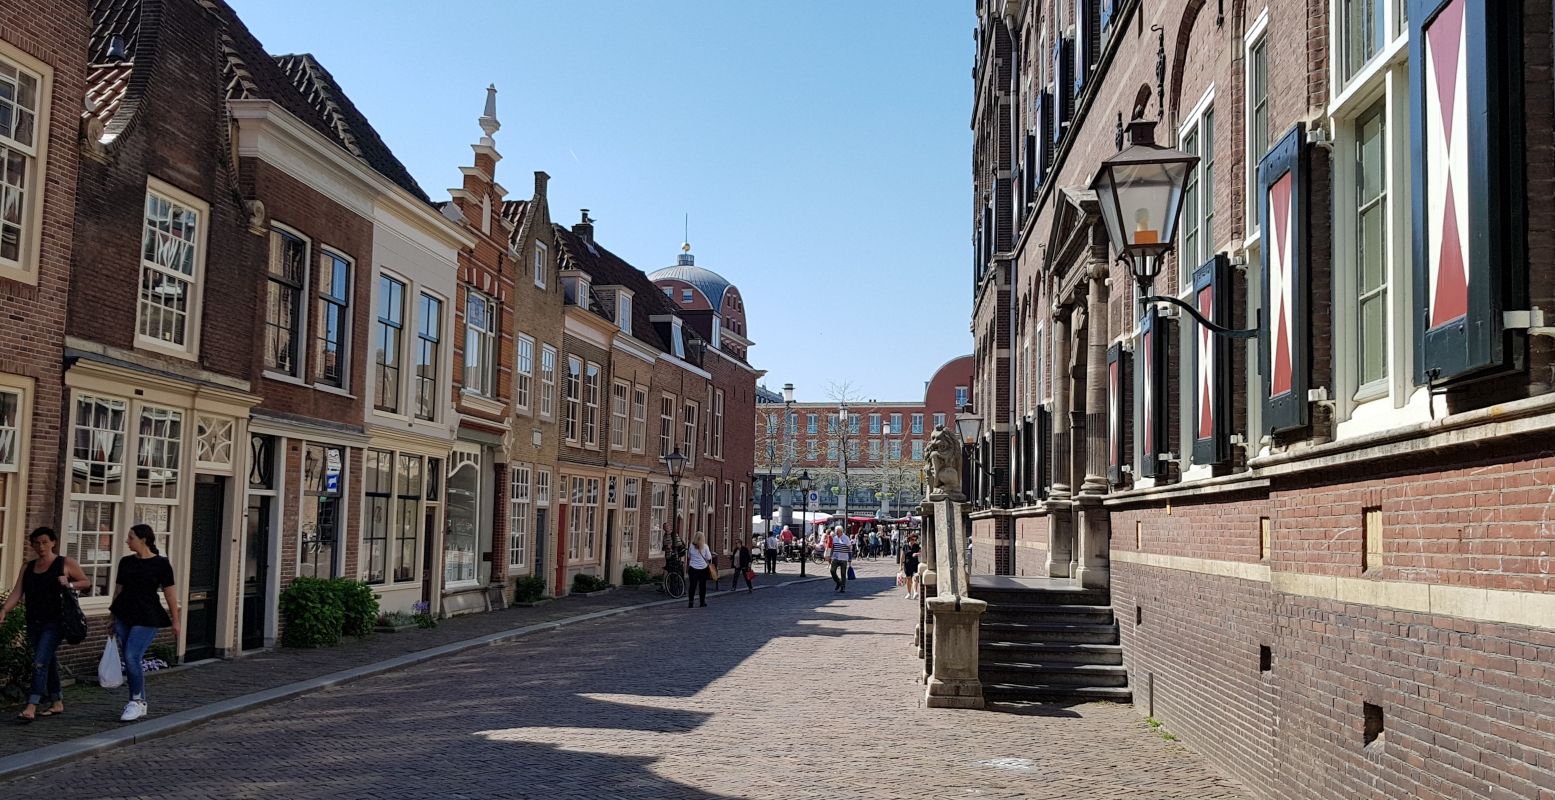 Pittoresk én gezellig. Wandel door het historische centrum van Dordrecht en ontdek hoe mooi deze oudste stad van Holland is. Foto: DagjeWeg.NL @ Tonny van Oosten